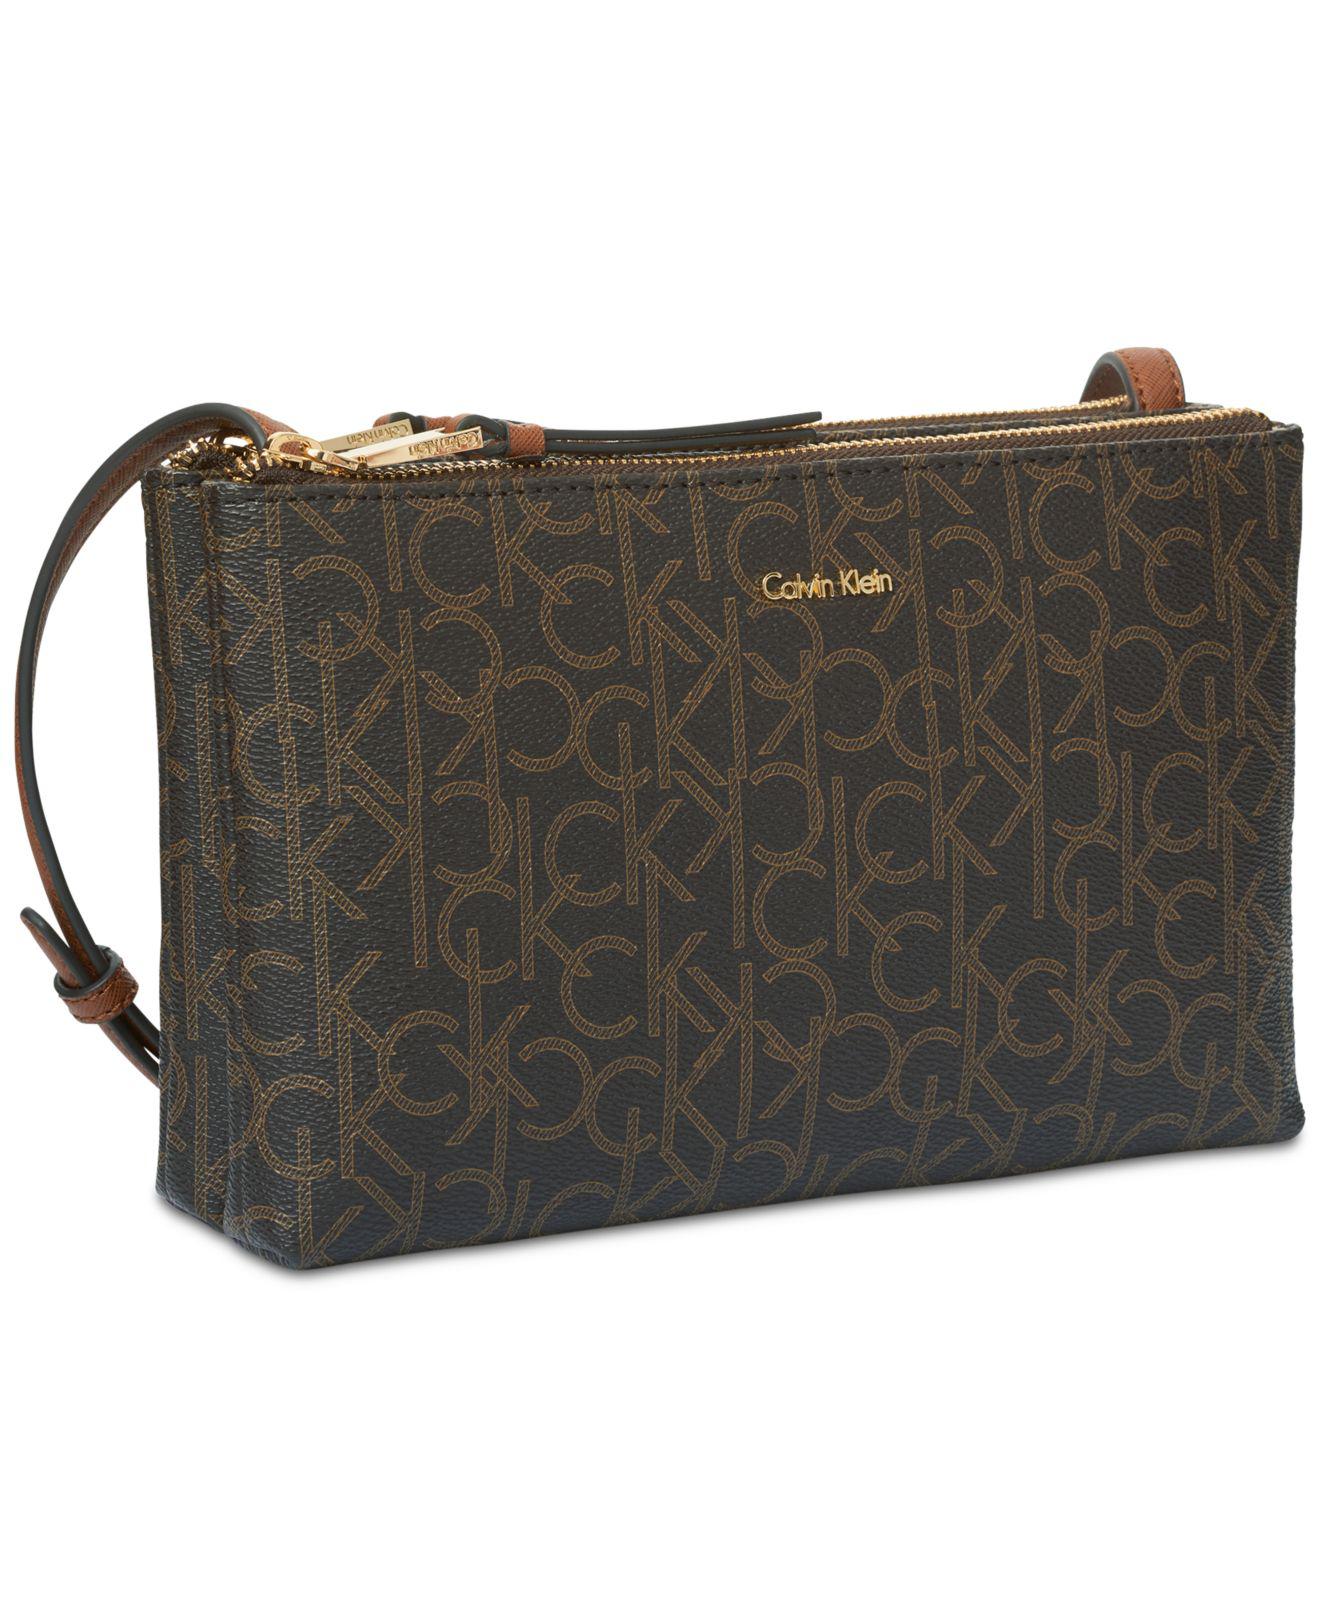 Calvin Klein handbag crossbody brown Signature Logo